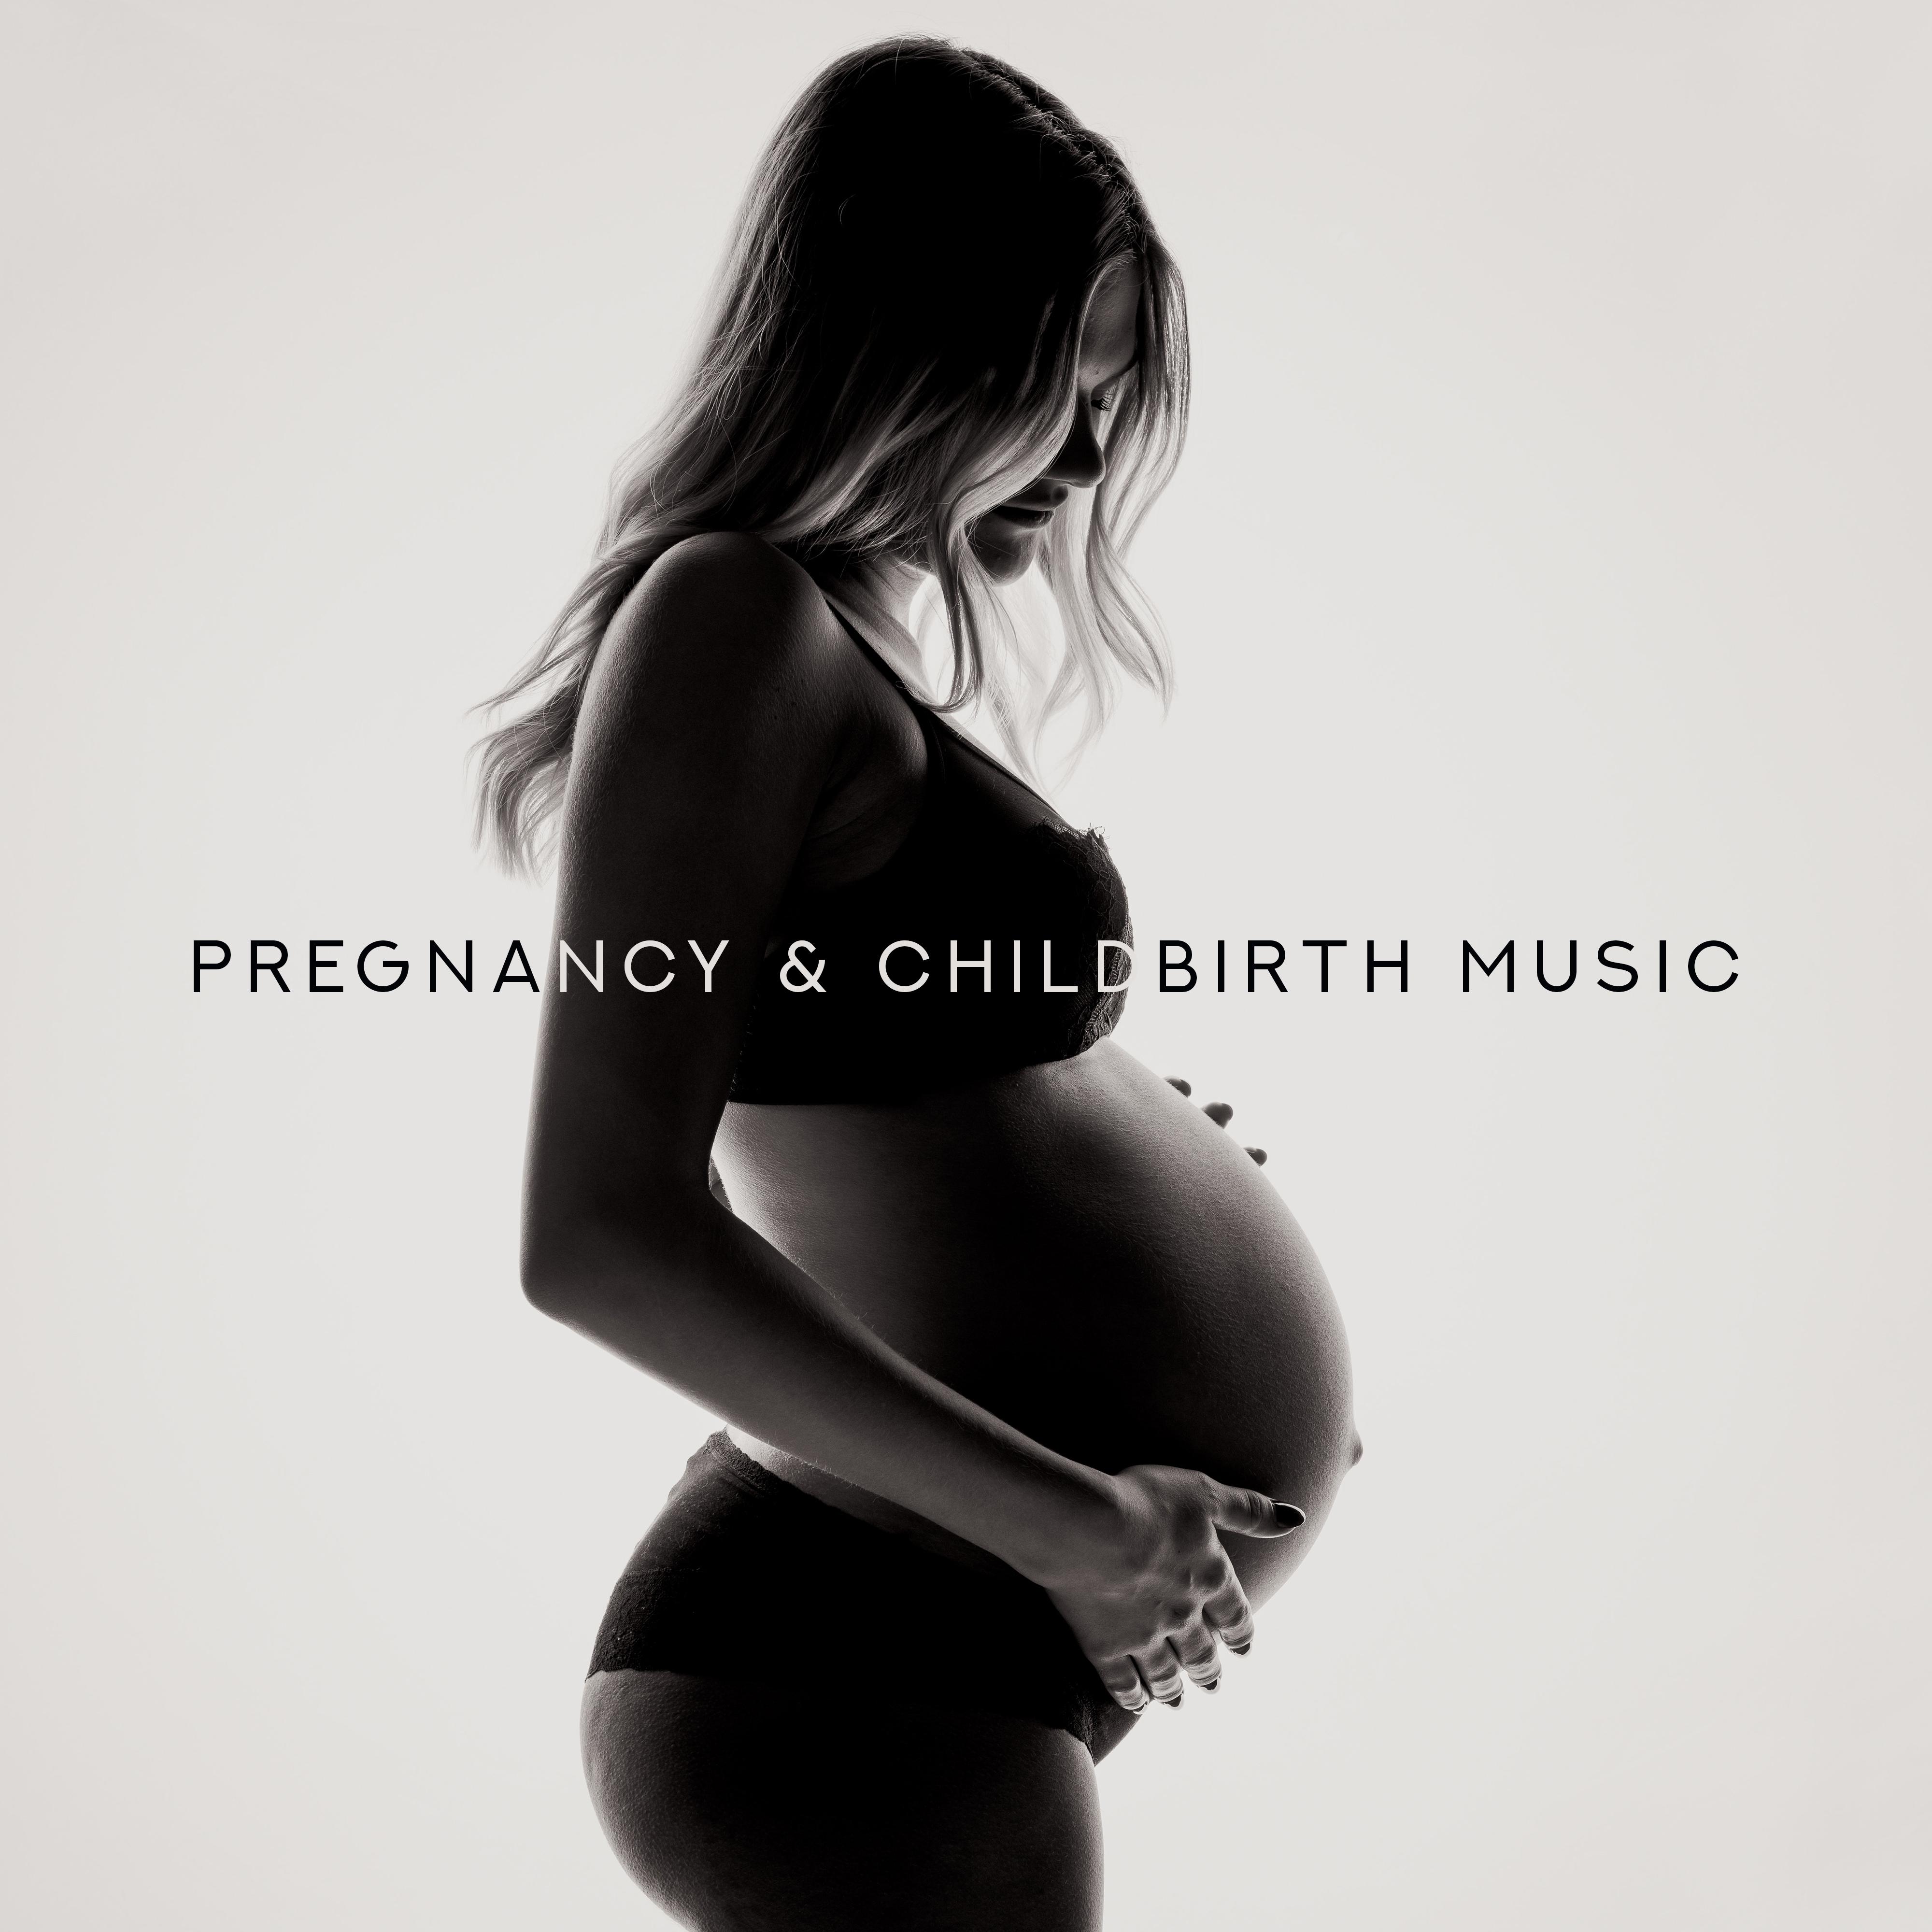 Pregnancy & Childbirth Music